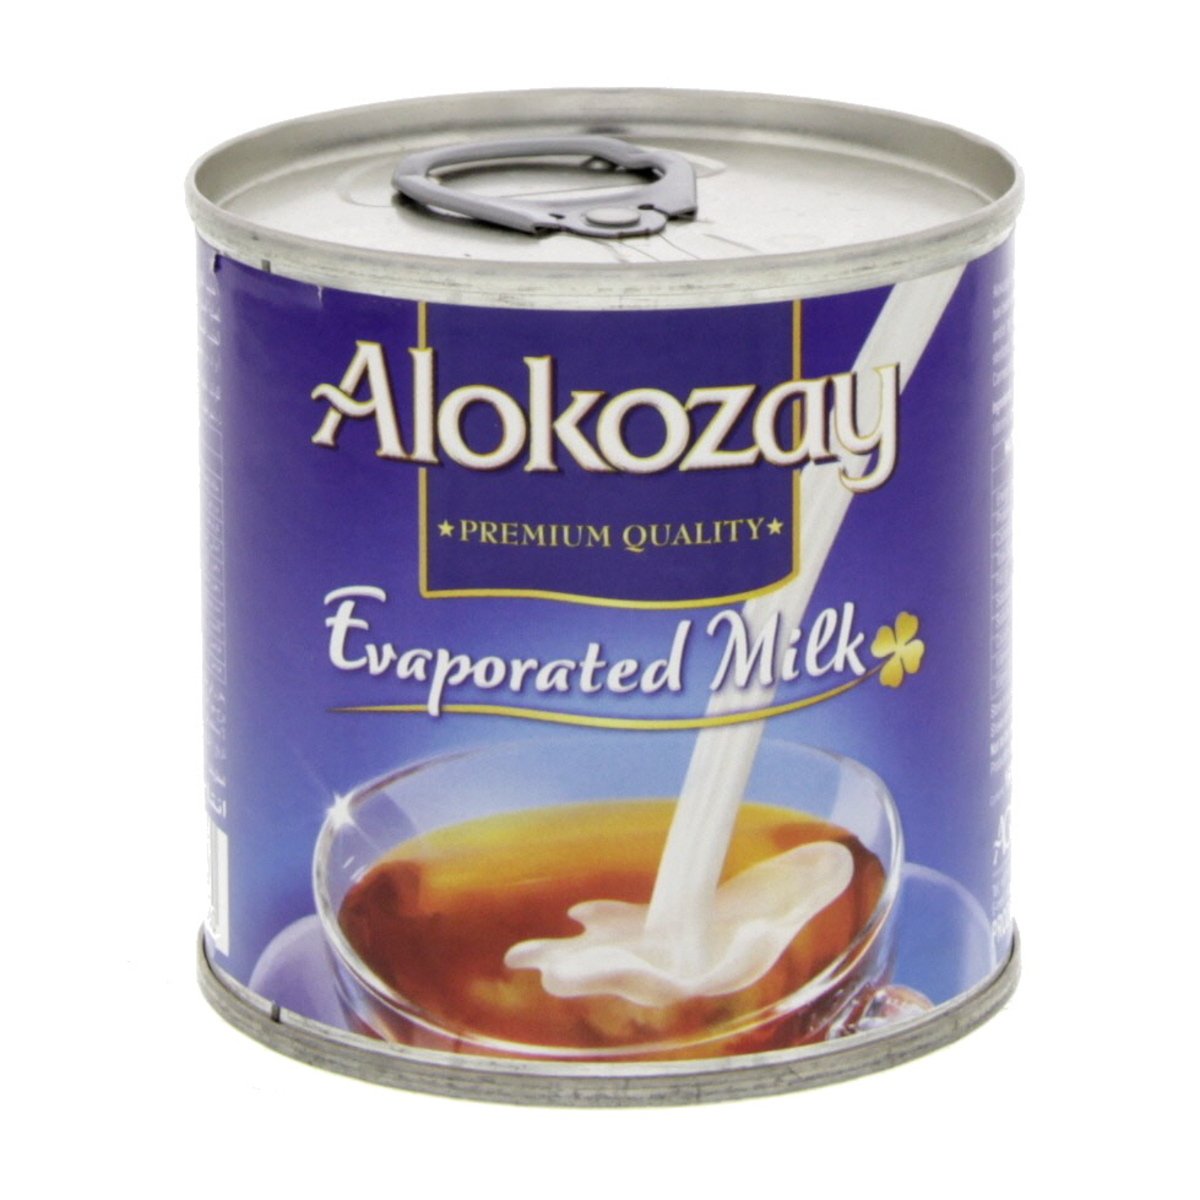 Alokozay Evaporated Milk 170g